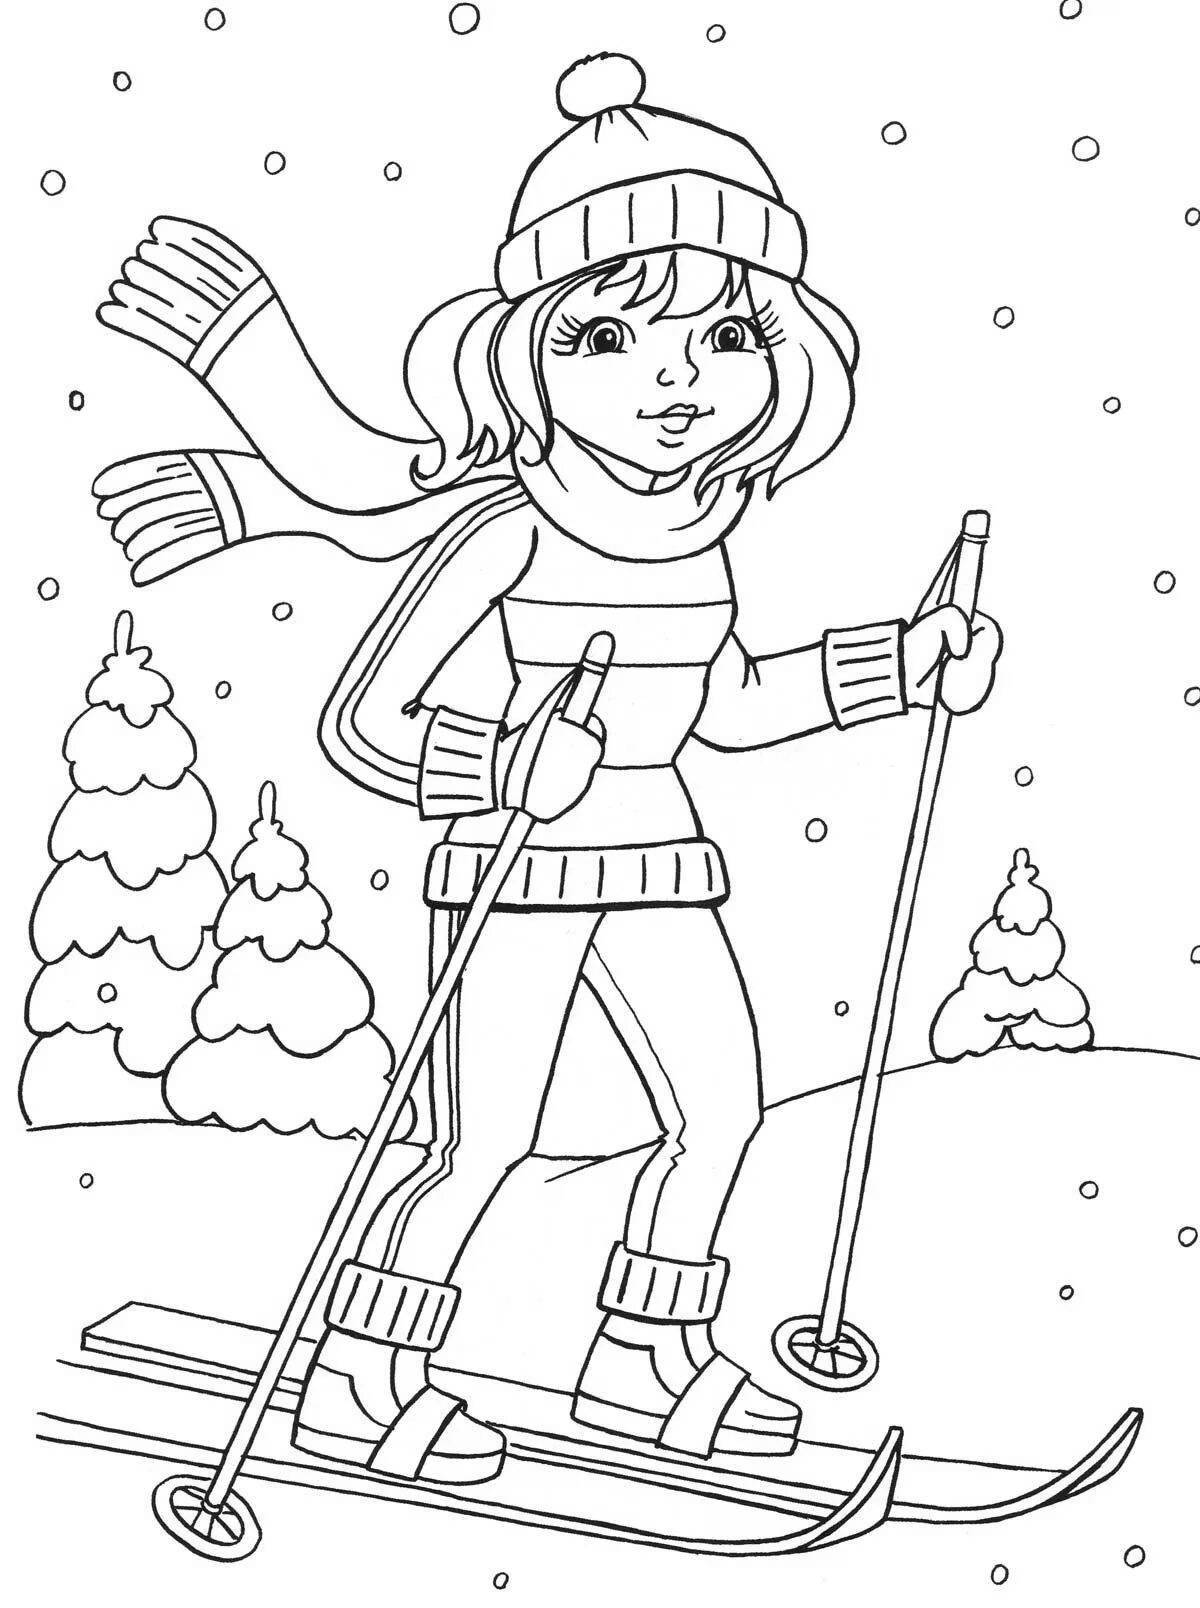 Раскраска смелый лыжник для детей 6-7 лет